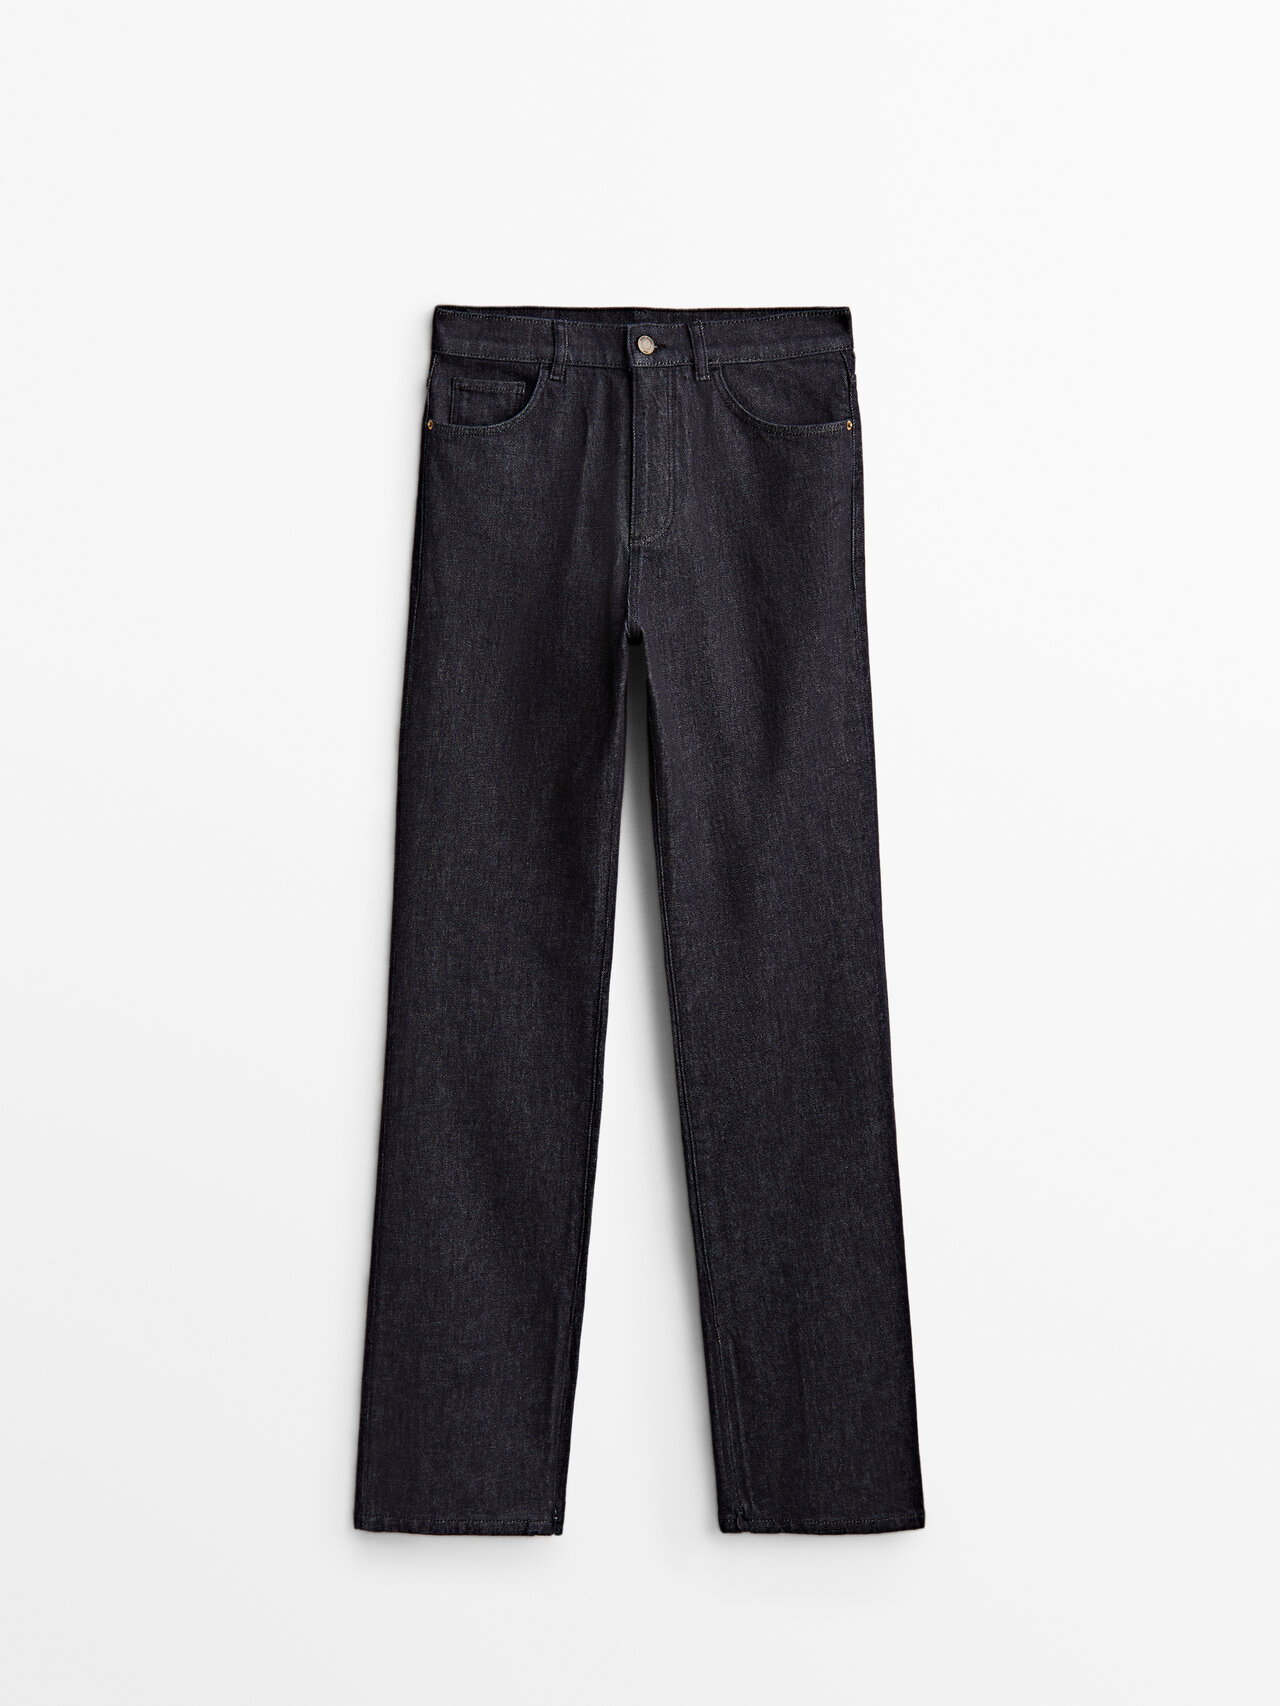 Massimo Dutti Full Length Slim Fit Jeans In Dunkelblau